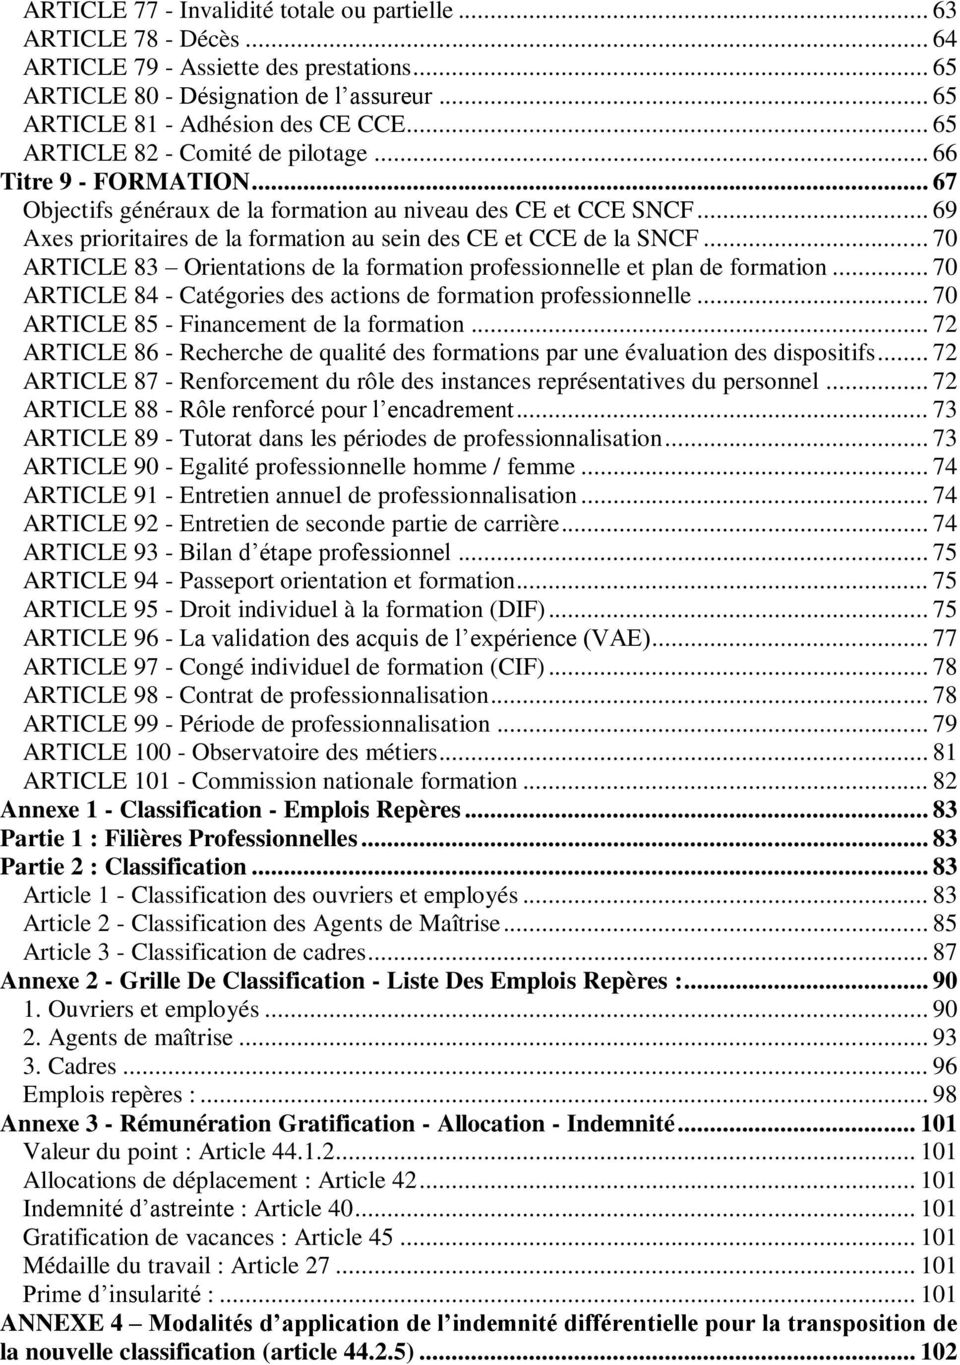 .. 69 Axes prioritaires de la formation au sein des CE et CCE de la SNCF... 70 ARTICLE 83 Orientations de la formation professionnelle et plan de formation.